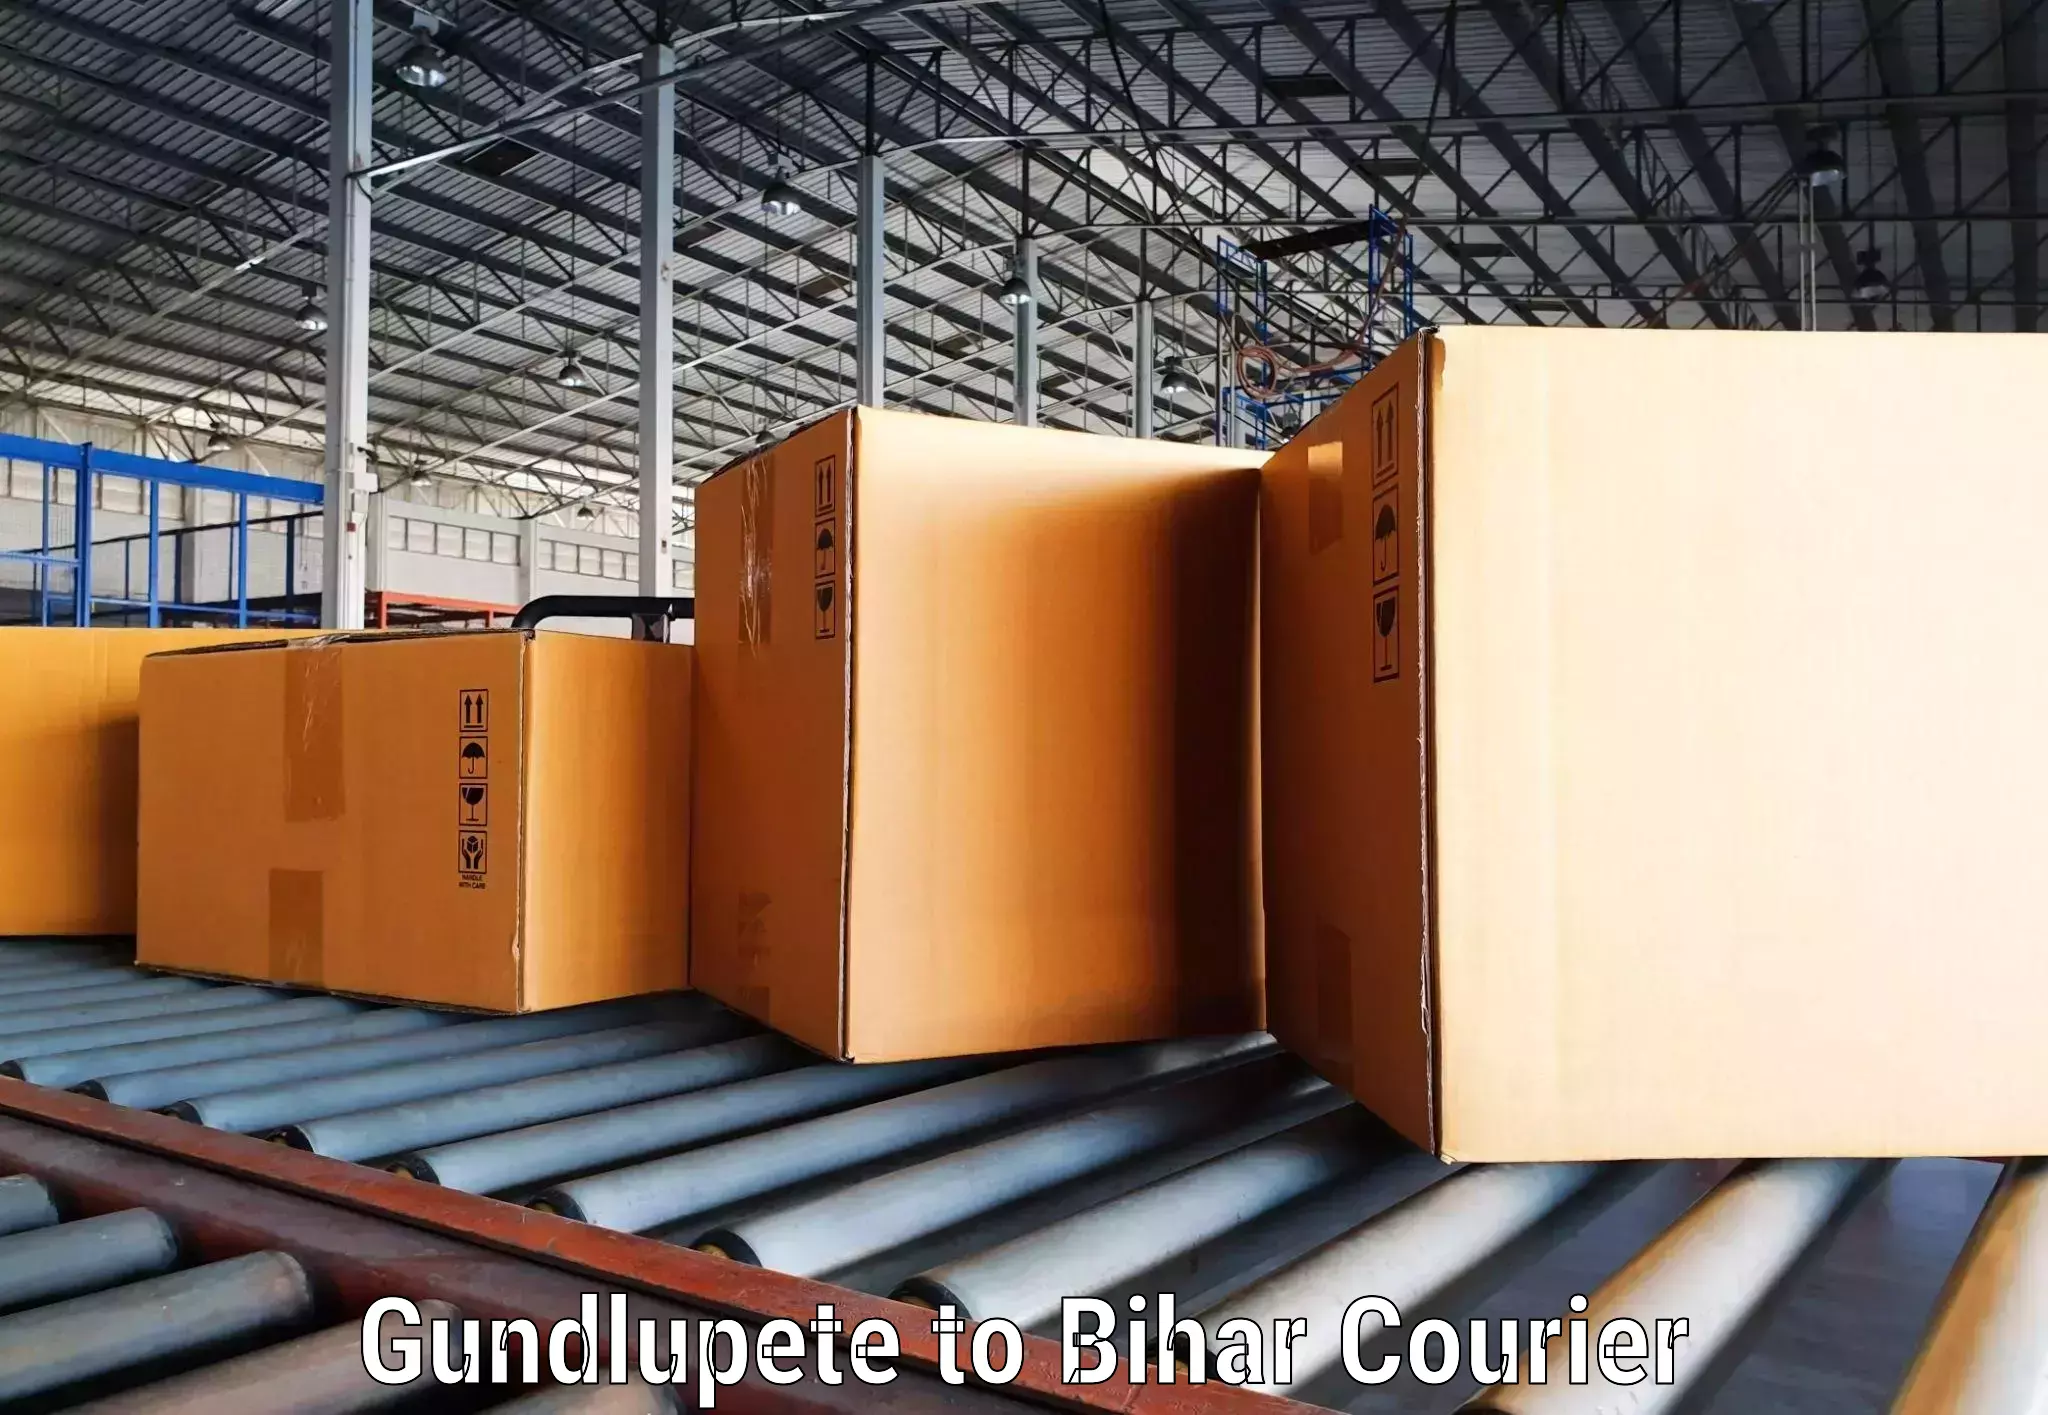 Global logistics network Gundlupete to Benipur